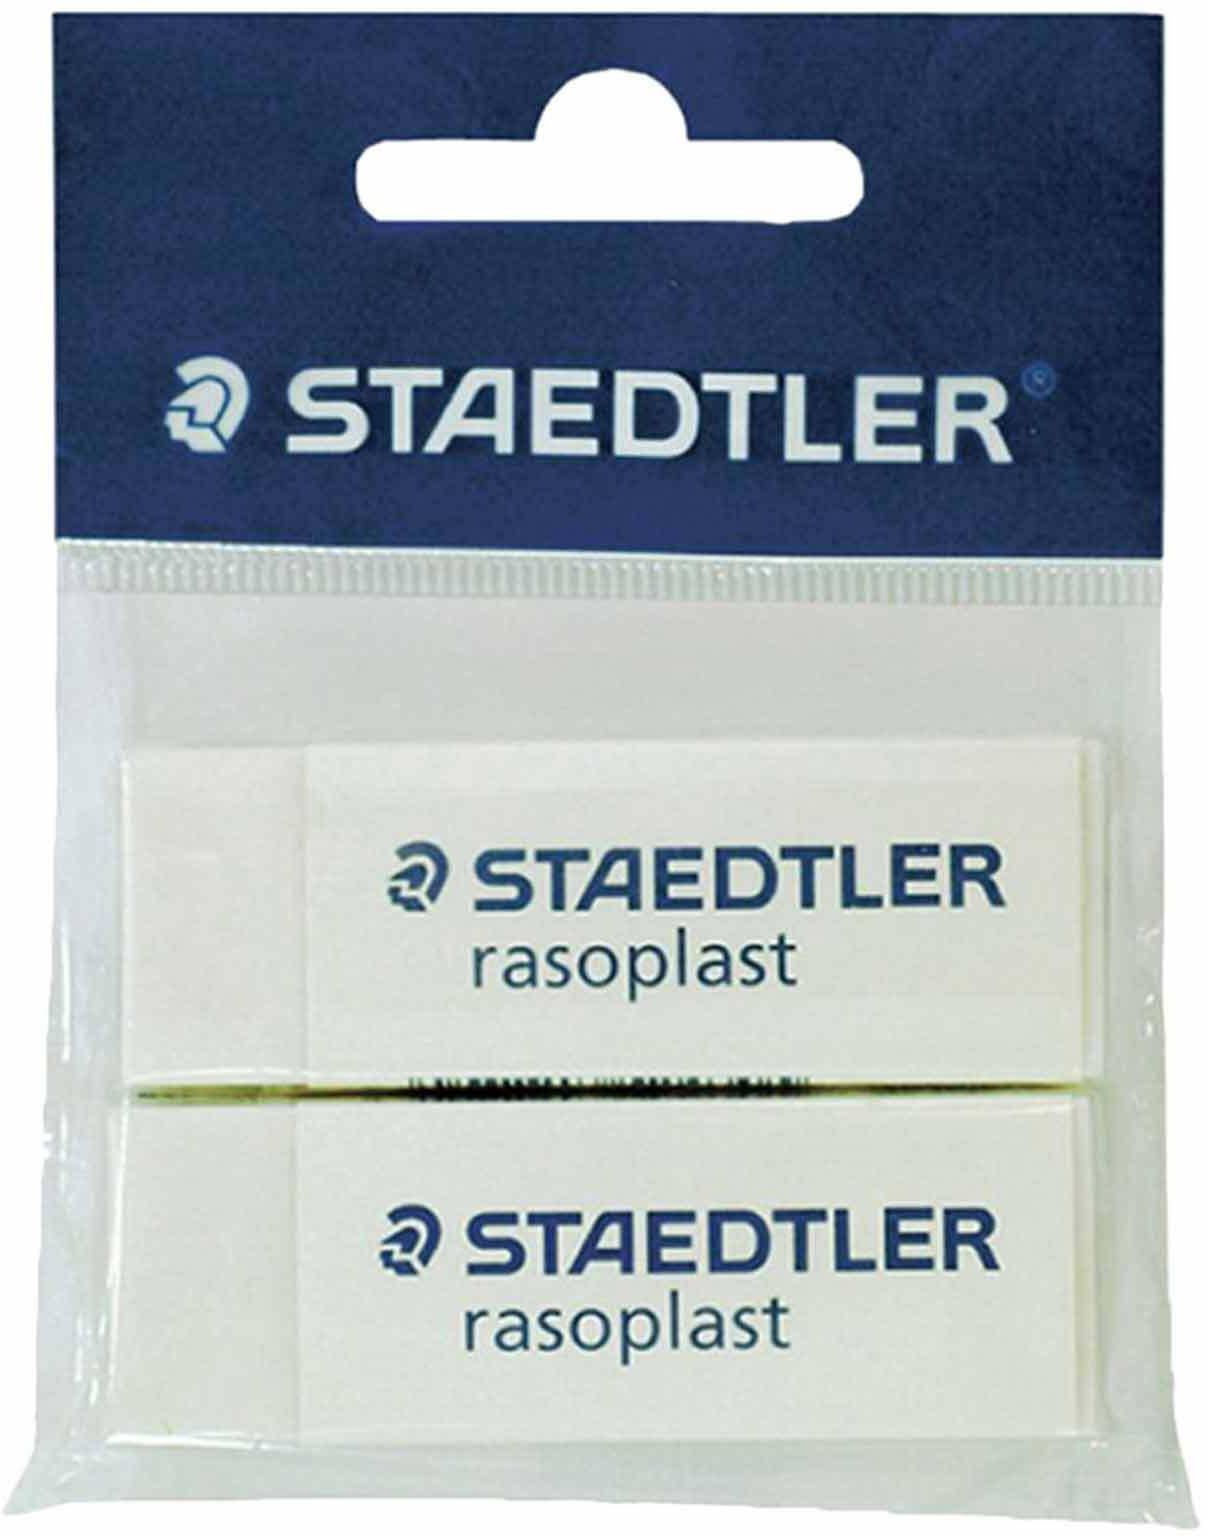 Staedtler rasoplast erasers 2 pieces